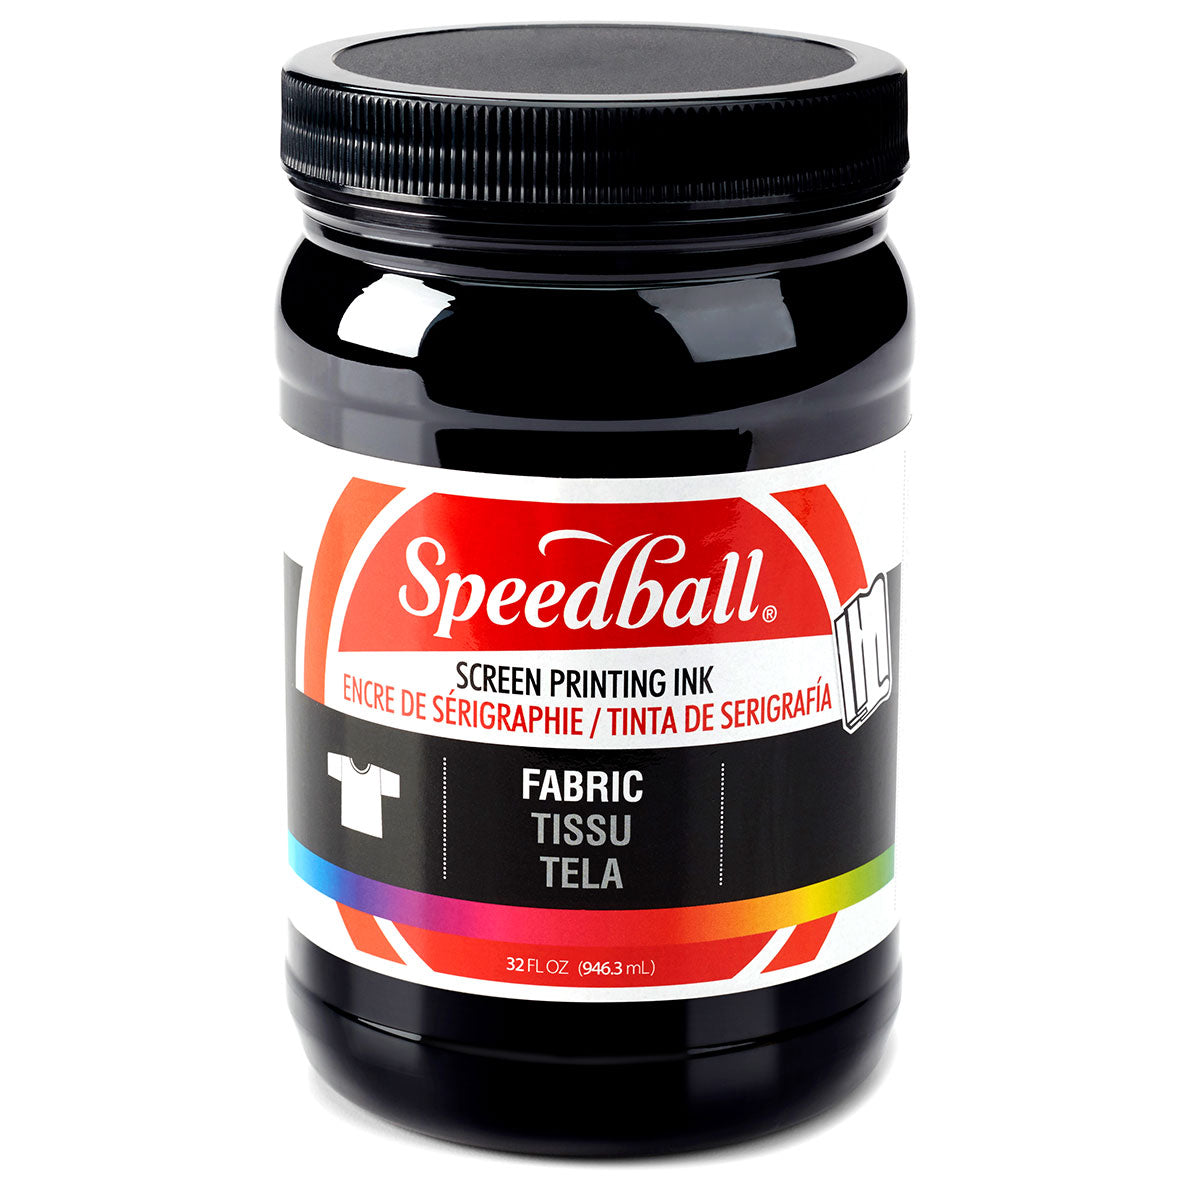 Speedball-Encre de sérigraphie textile 946ml (32oz) -Noir